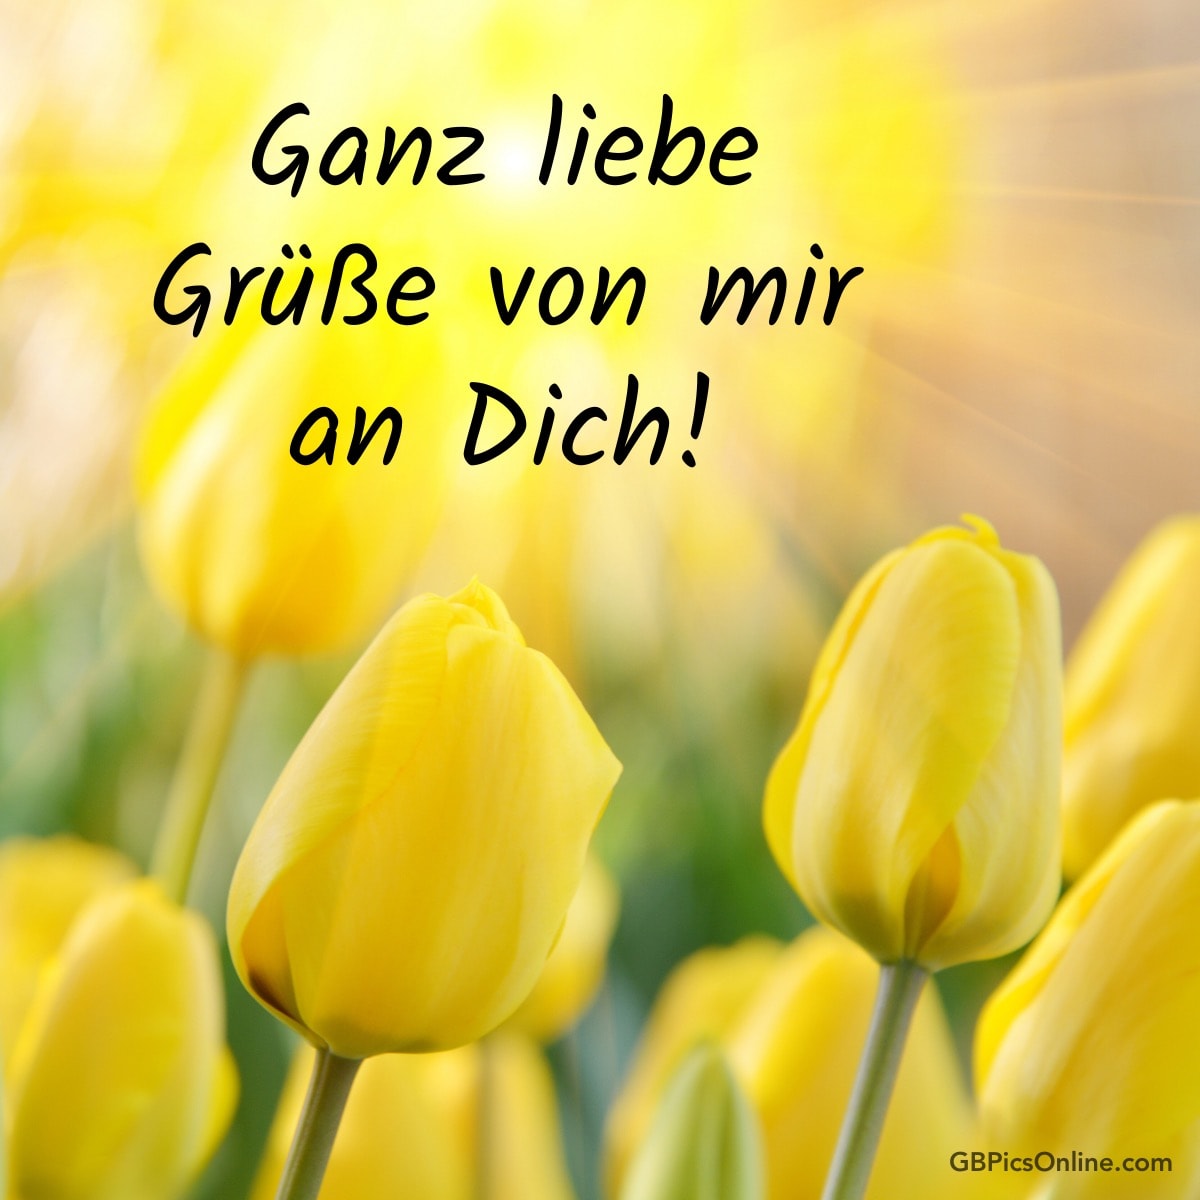 Gelbe Tulpen mit Text: „Ganz liebe Grüße von mir an Dich!“